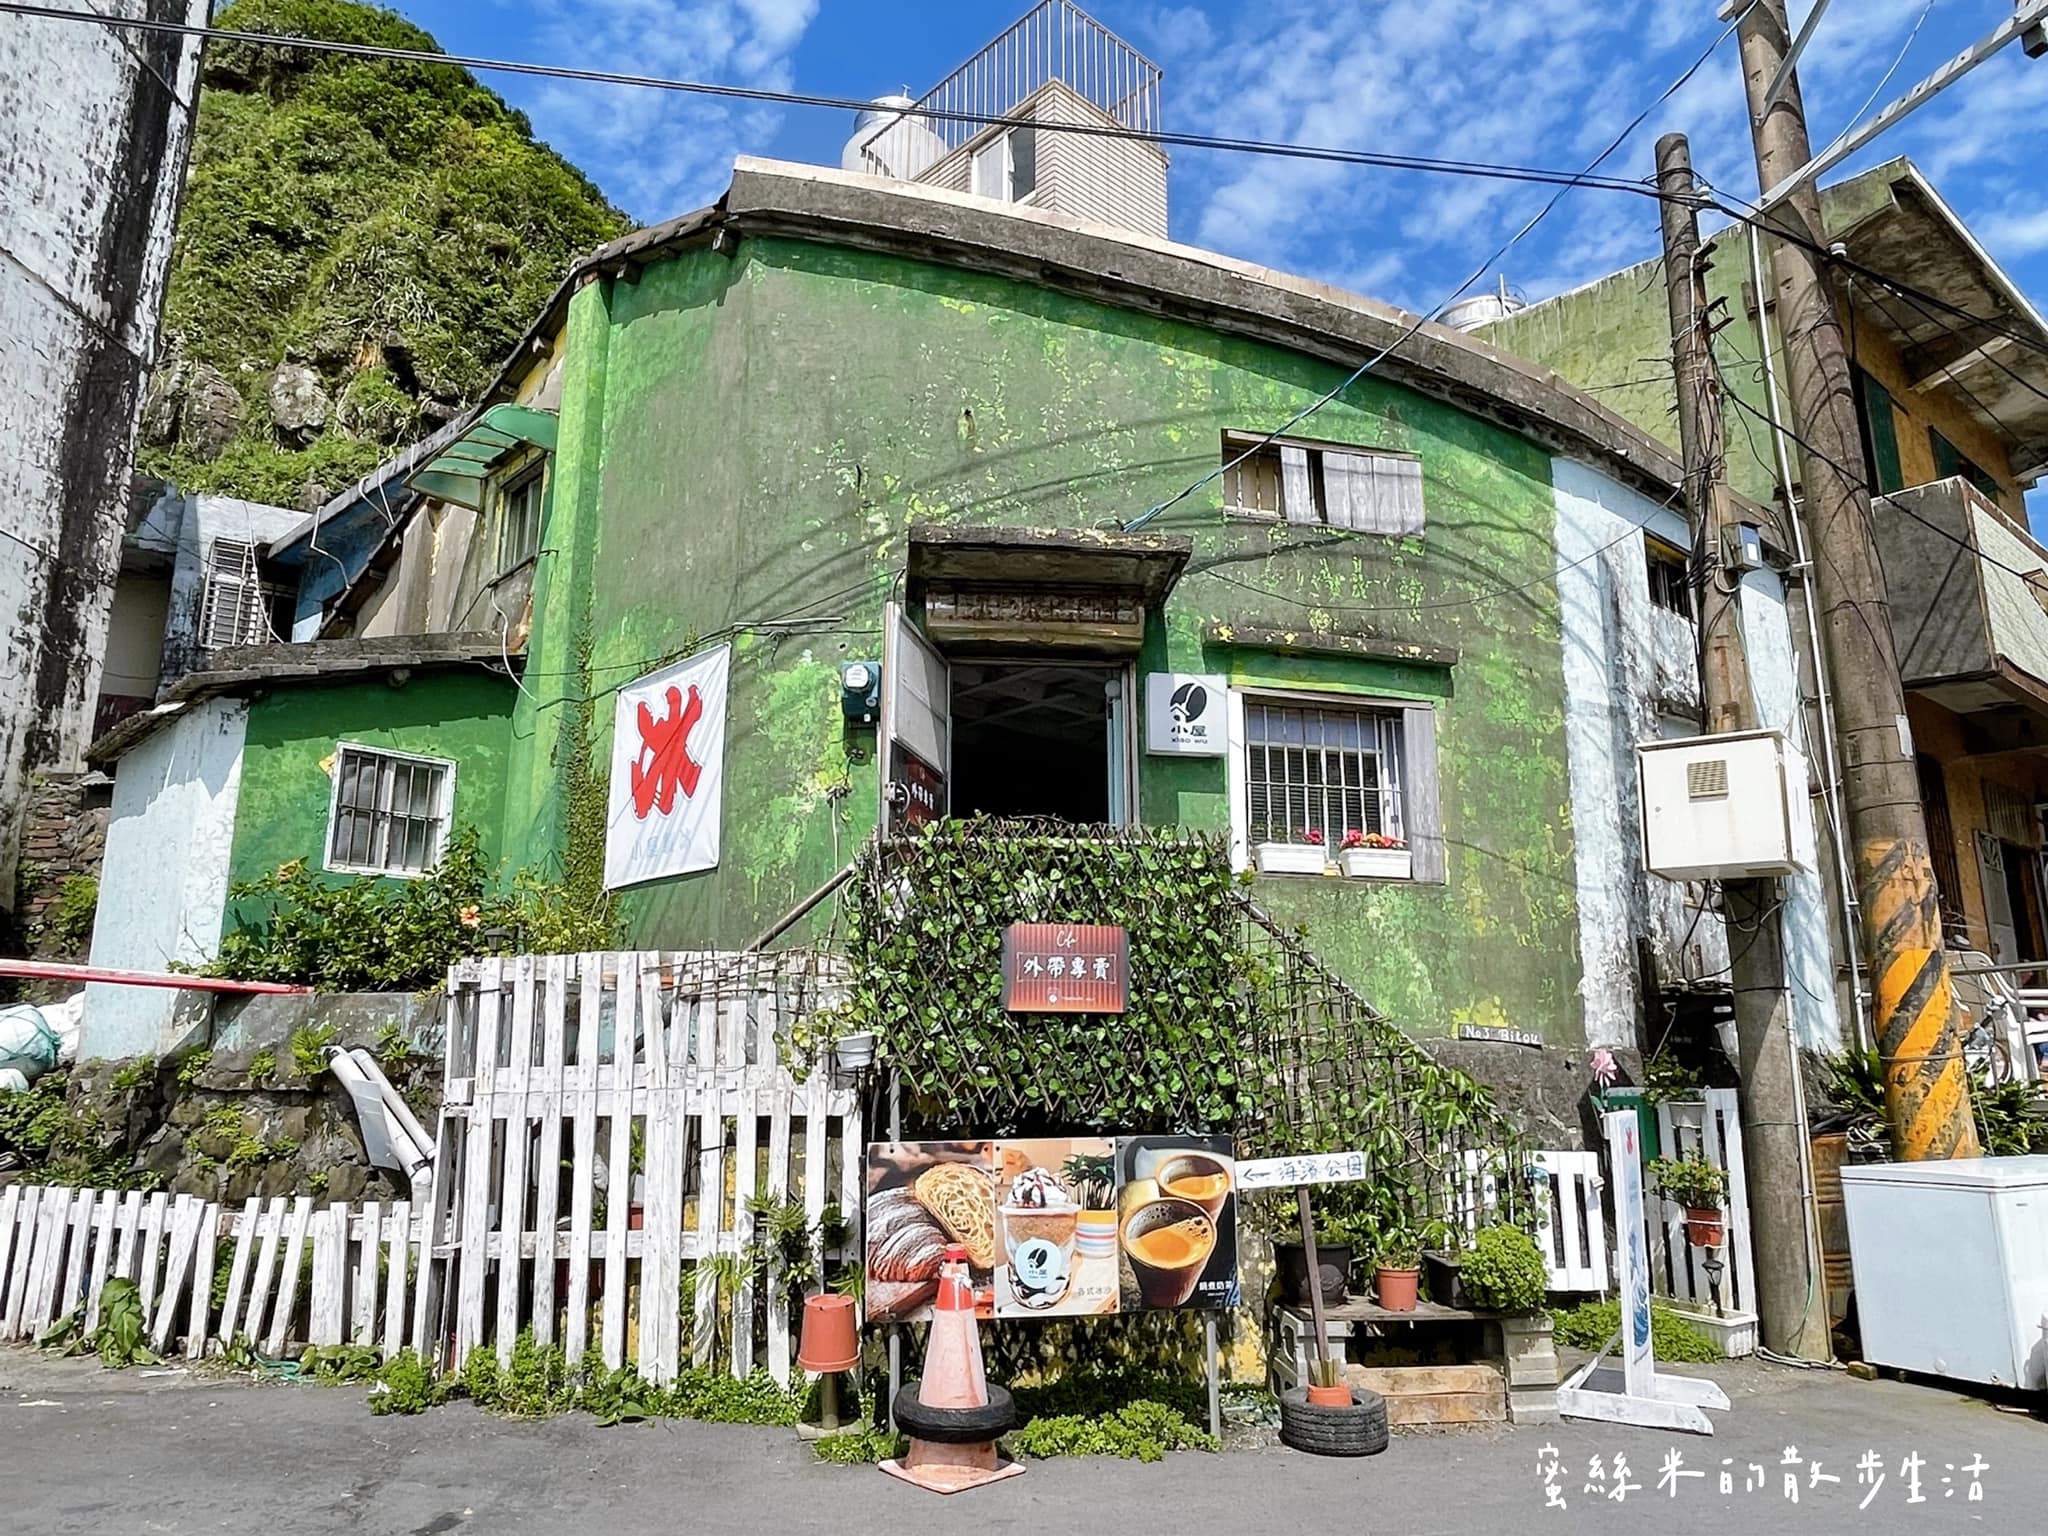 網站近期文章：鼻頭角海濱公園的童話感百年老宅咖啡屋「小屋 xiao wu」，時髦地外帶一杯冰沙吧！